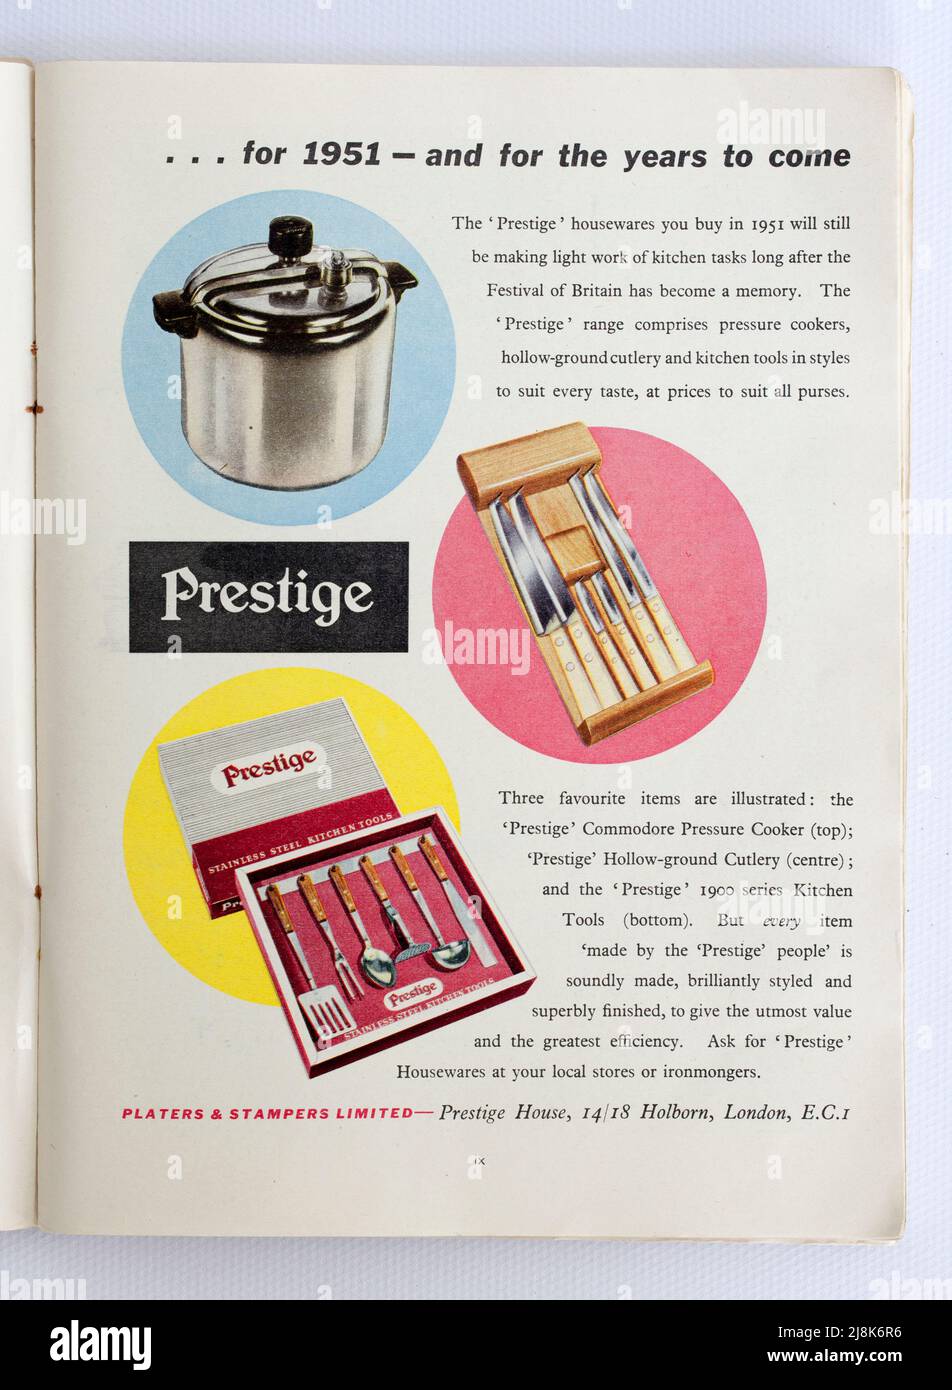 Viejo 1950s Publicidad británica para los bienes domésticos del prestigio Foto de stock